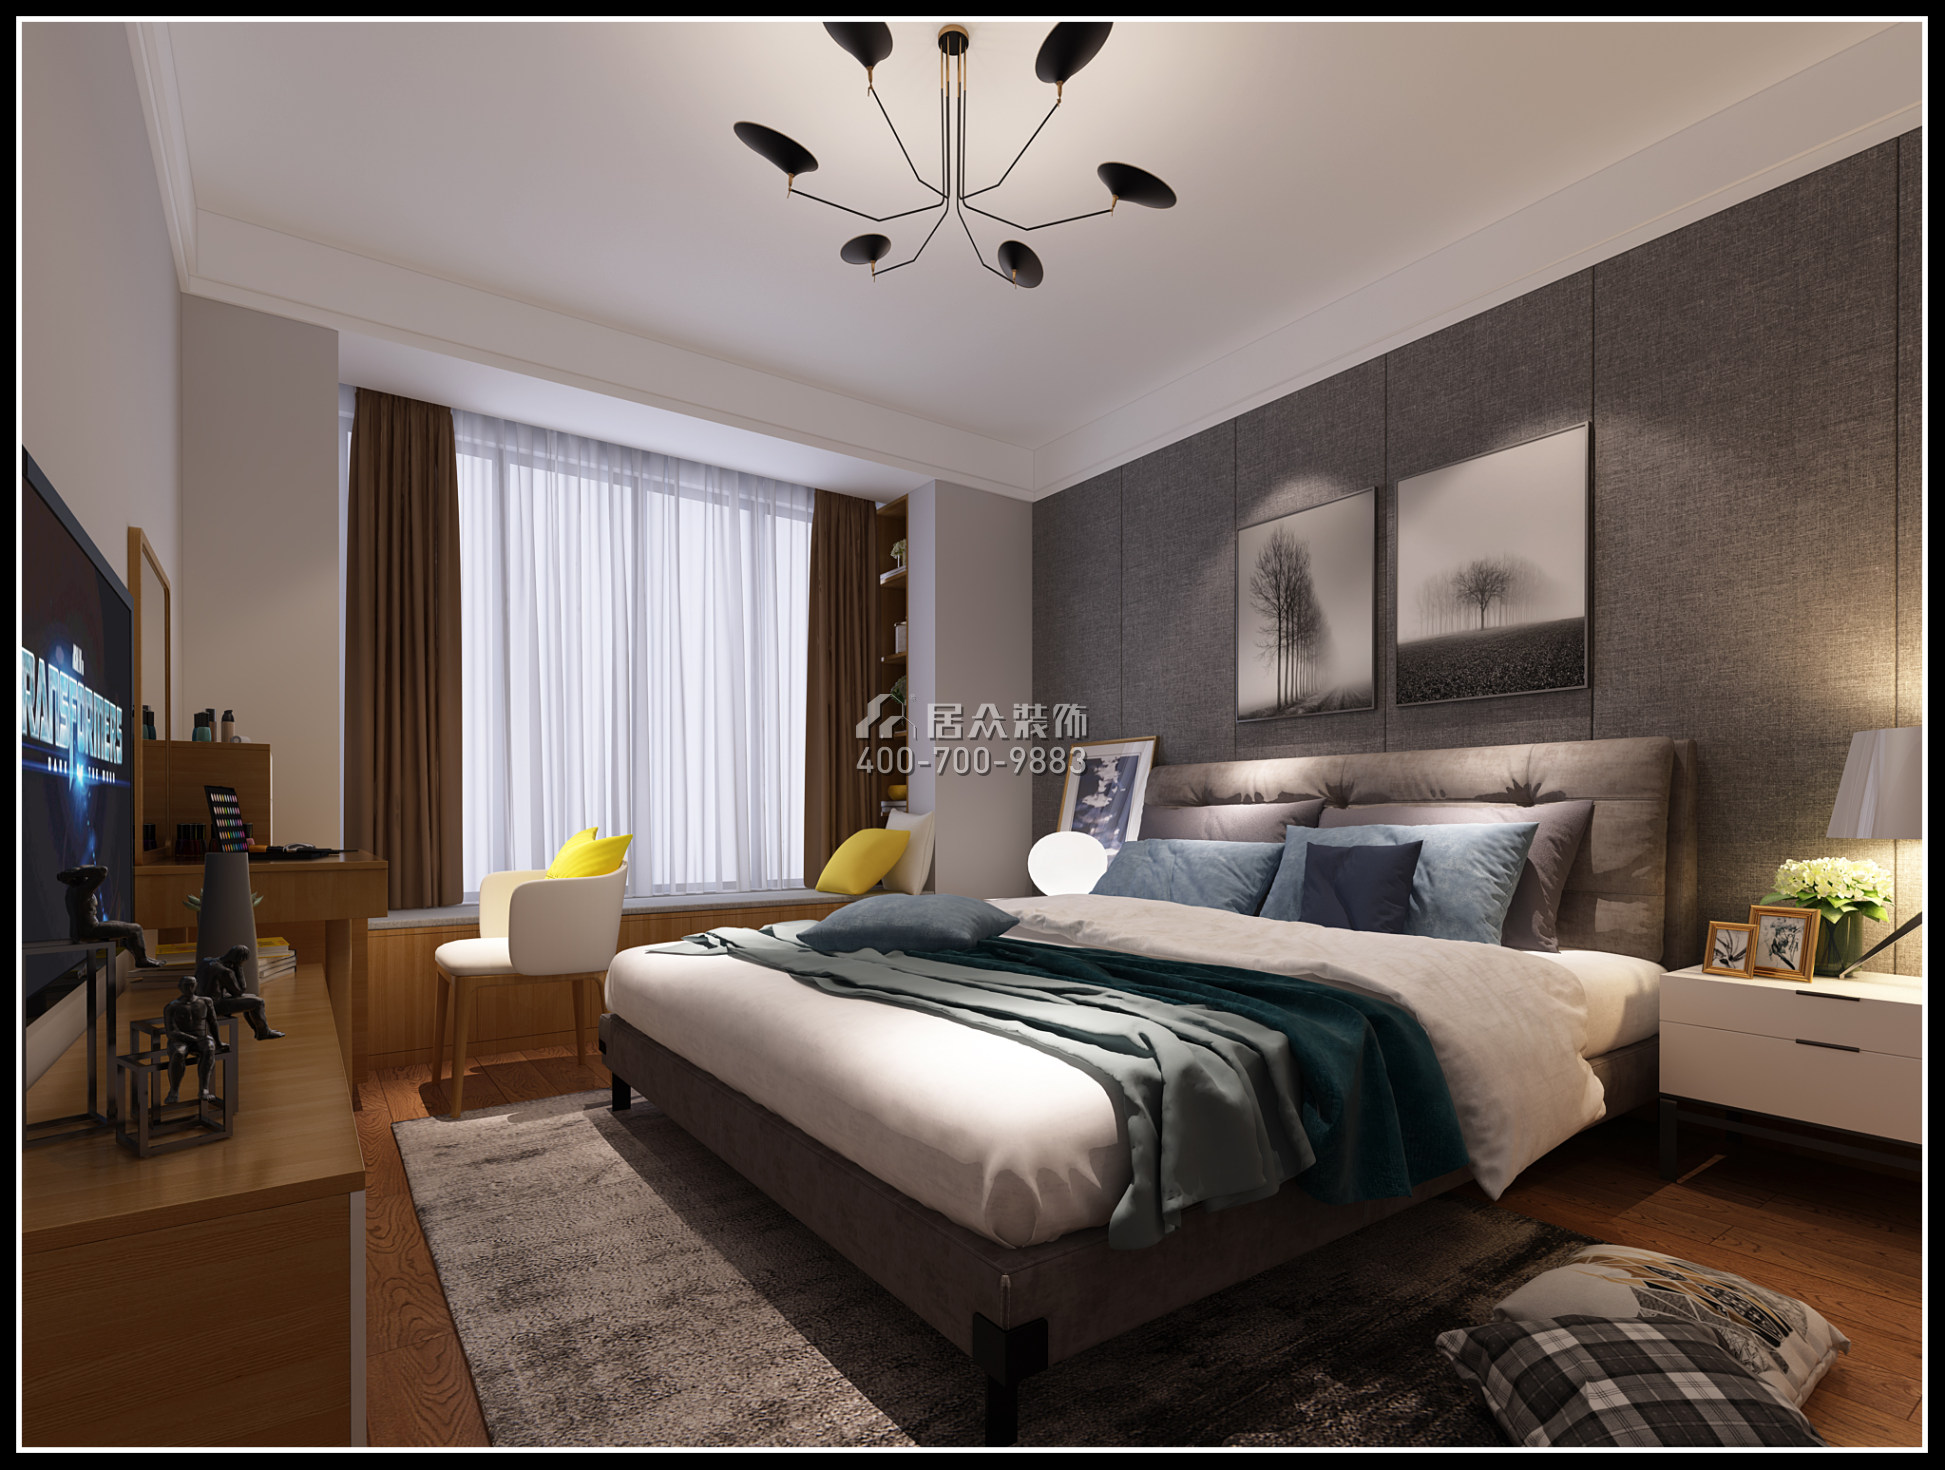 美的翰城130平方米现代简约风格平层户型卧室装修效果图